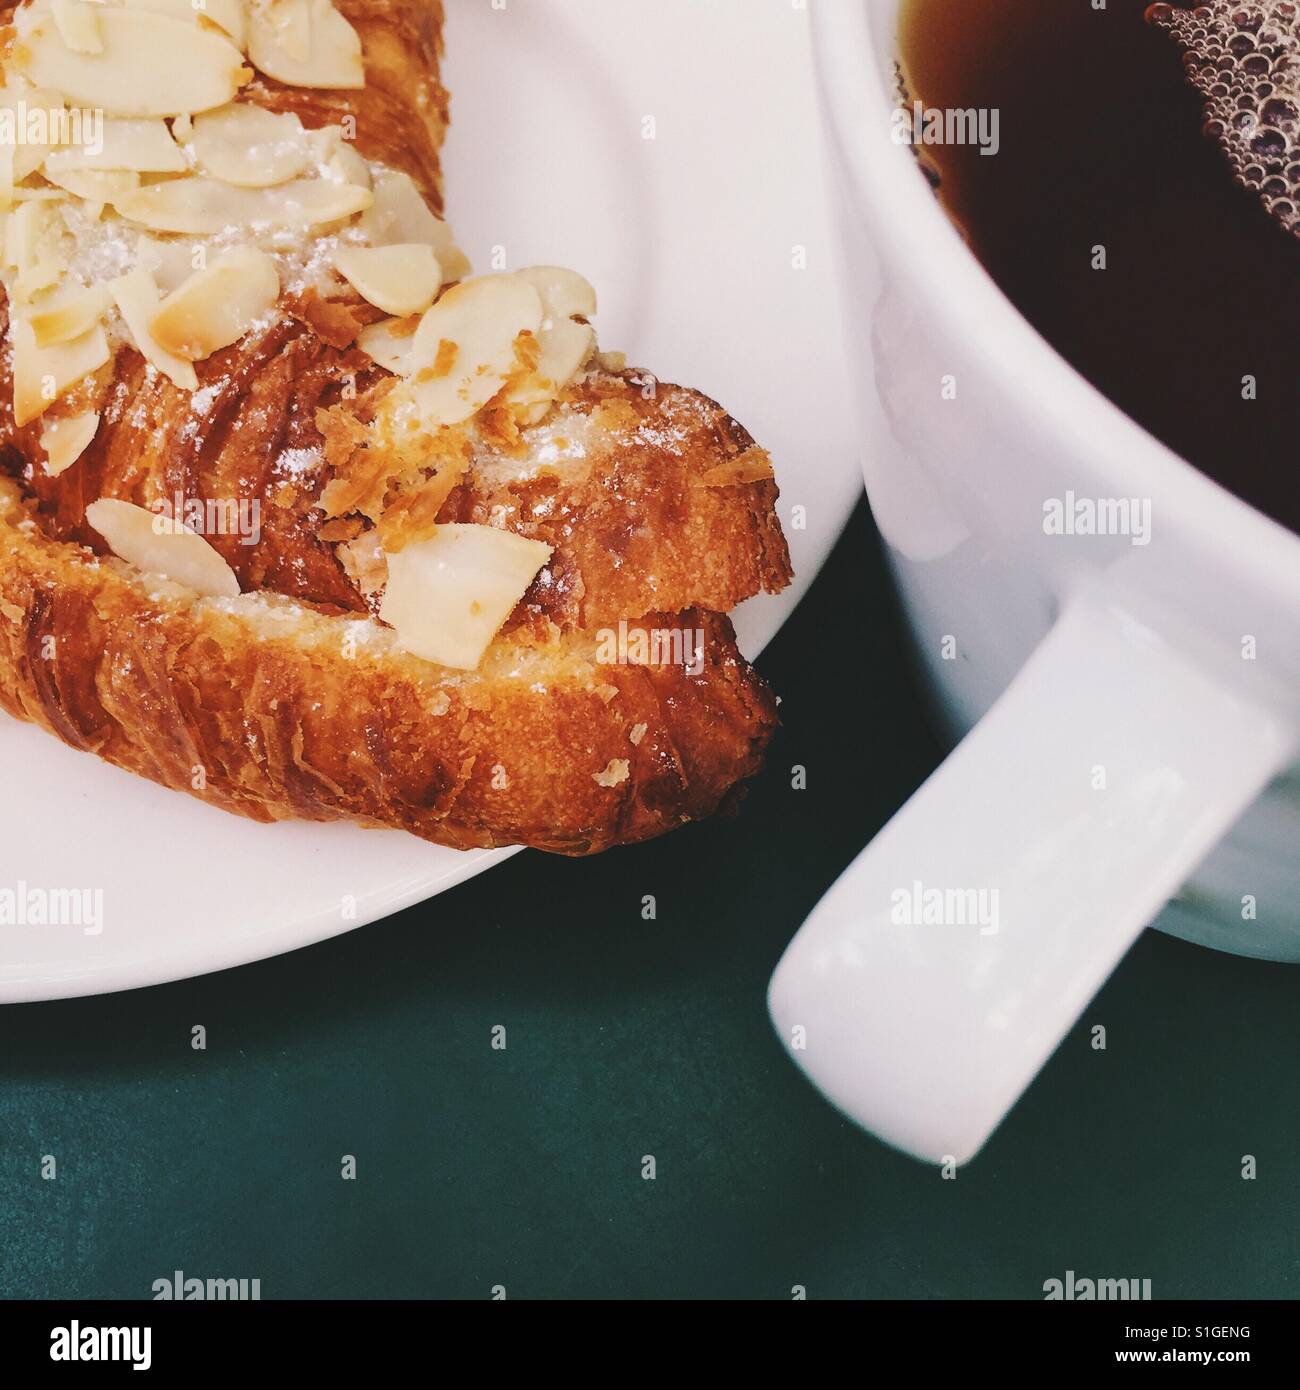 Eine frische Tasse Earl Grey Tee und eine Mandel Croissant am grünen Tisch Stockfoto